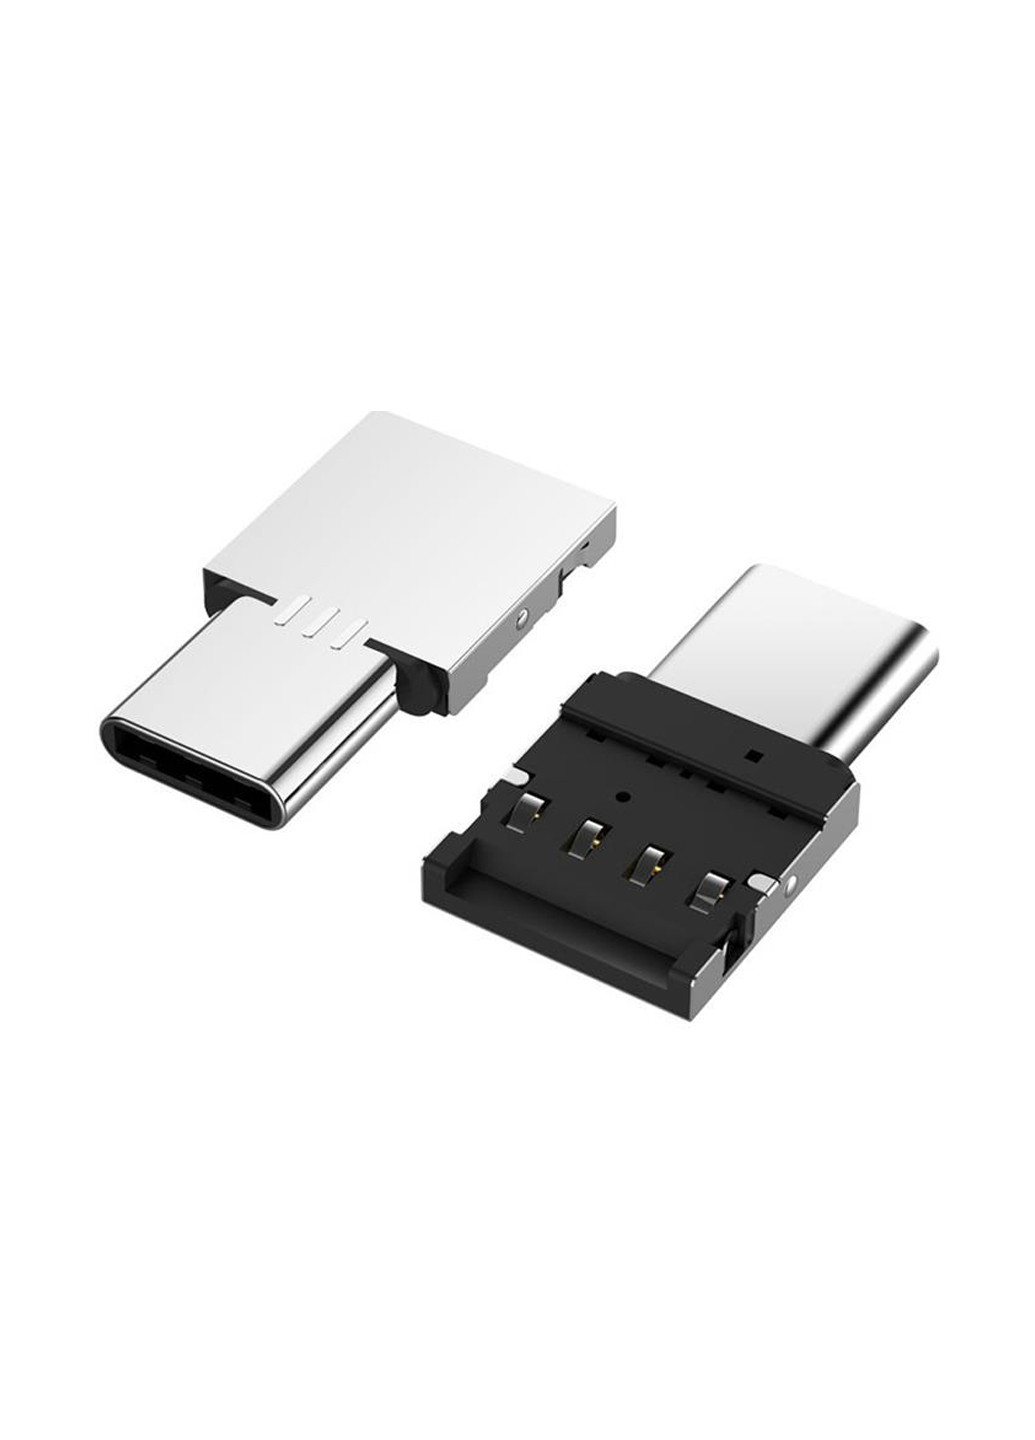 Перехідник AC-045 USB - Type-C срібний XoKo ac-045 usb - type-c серебряный (144530474)